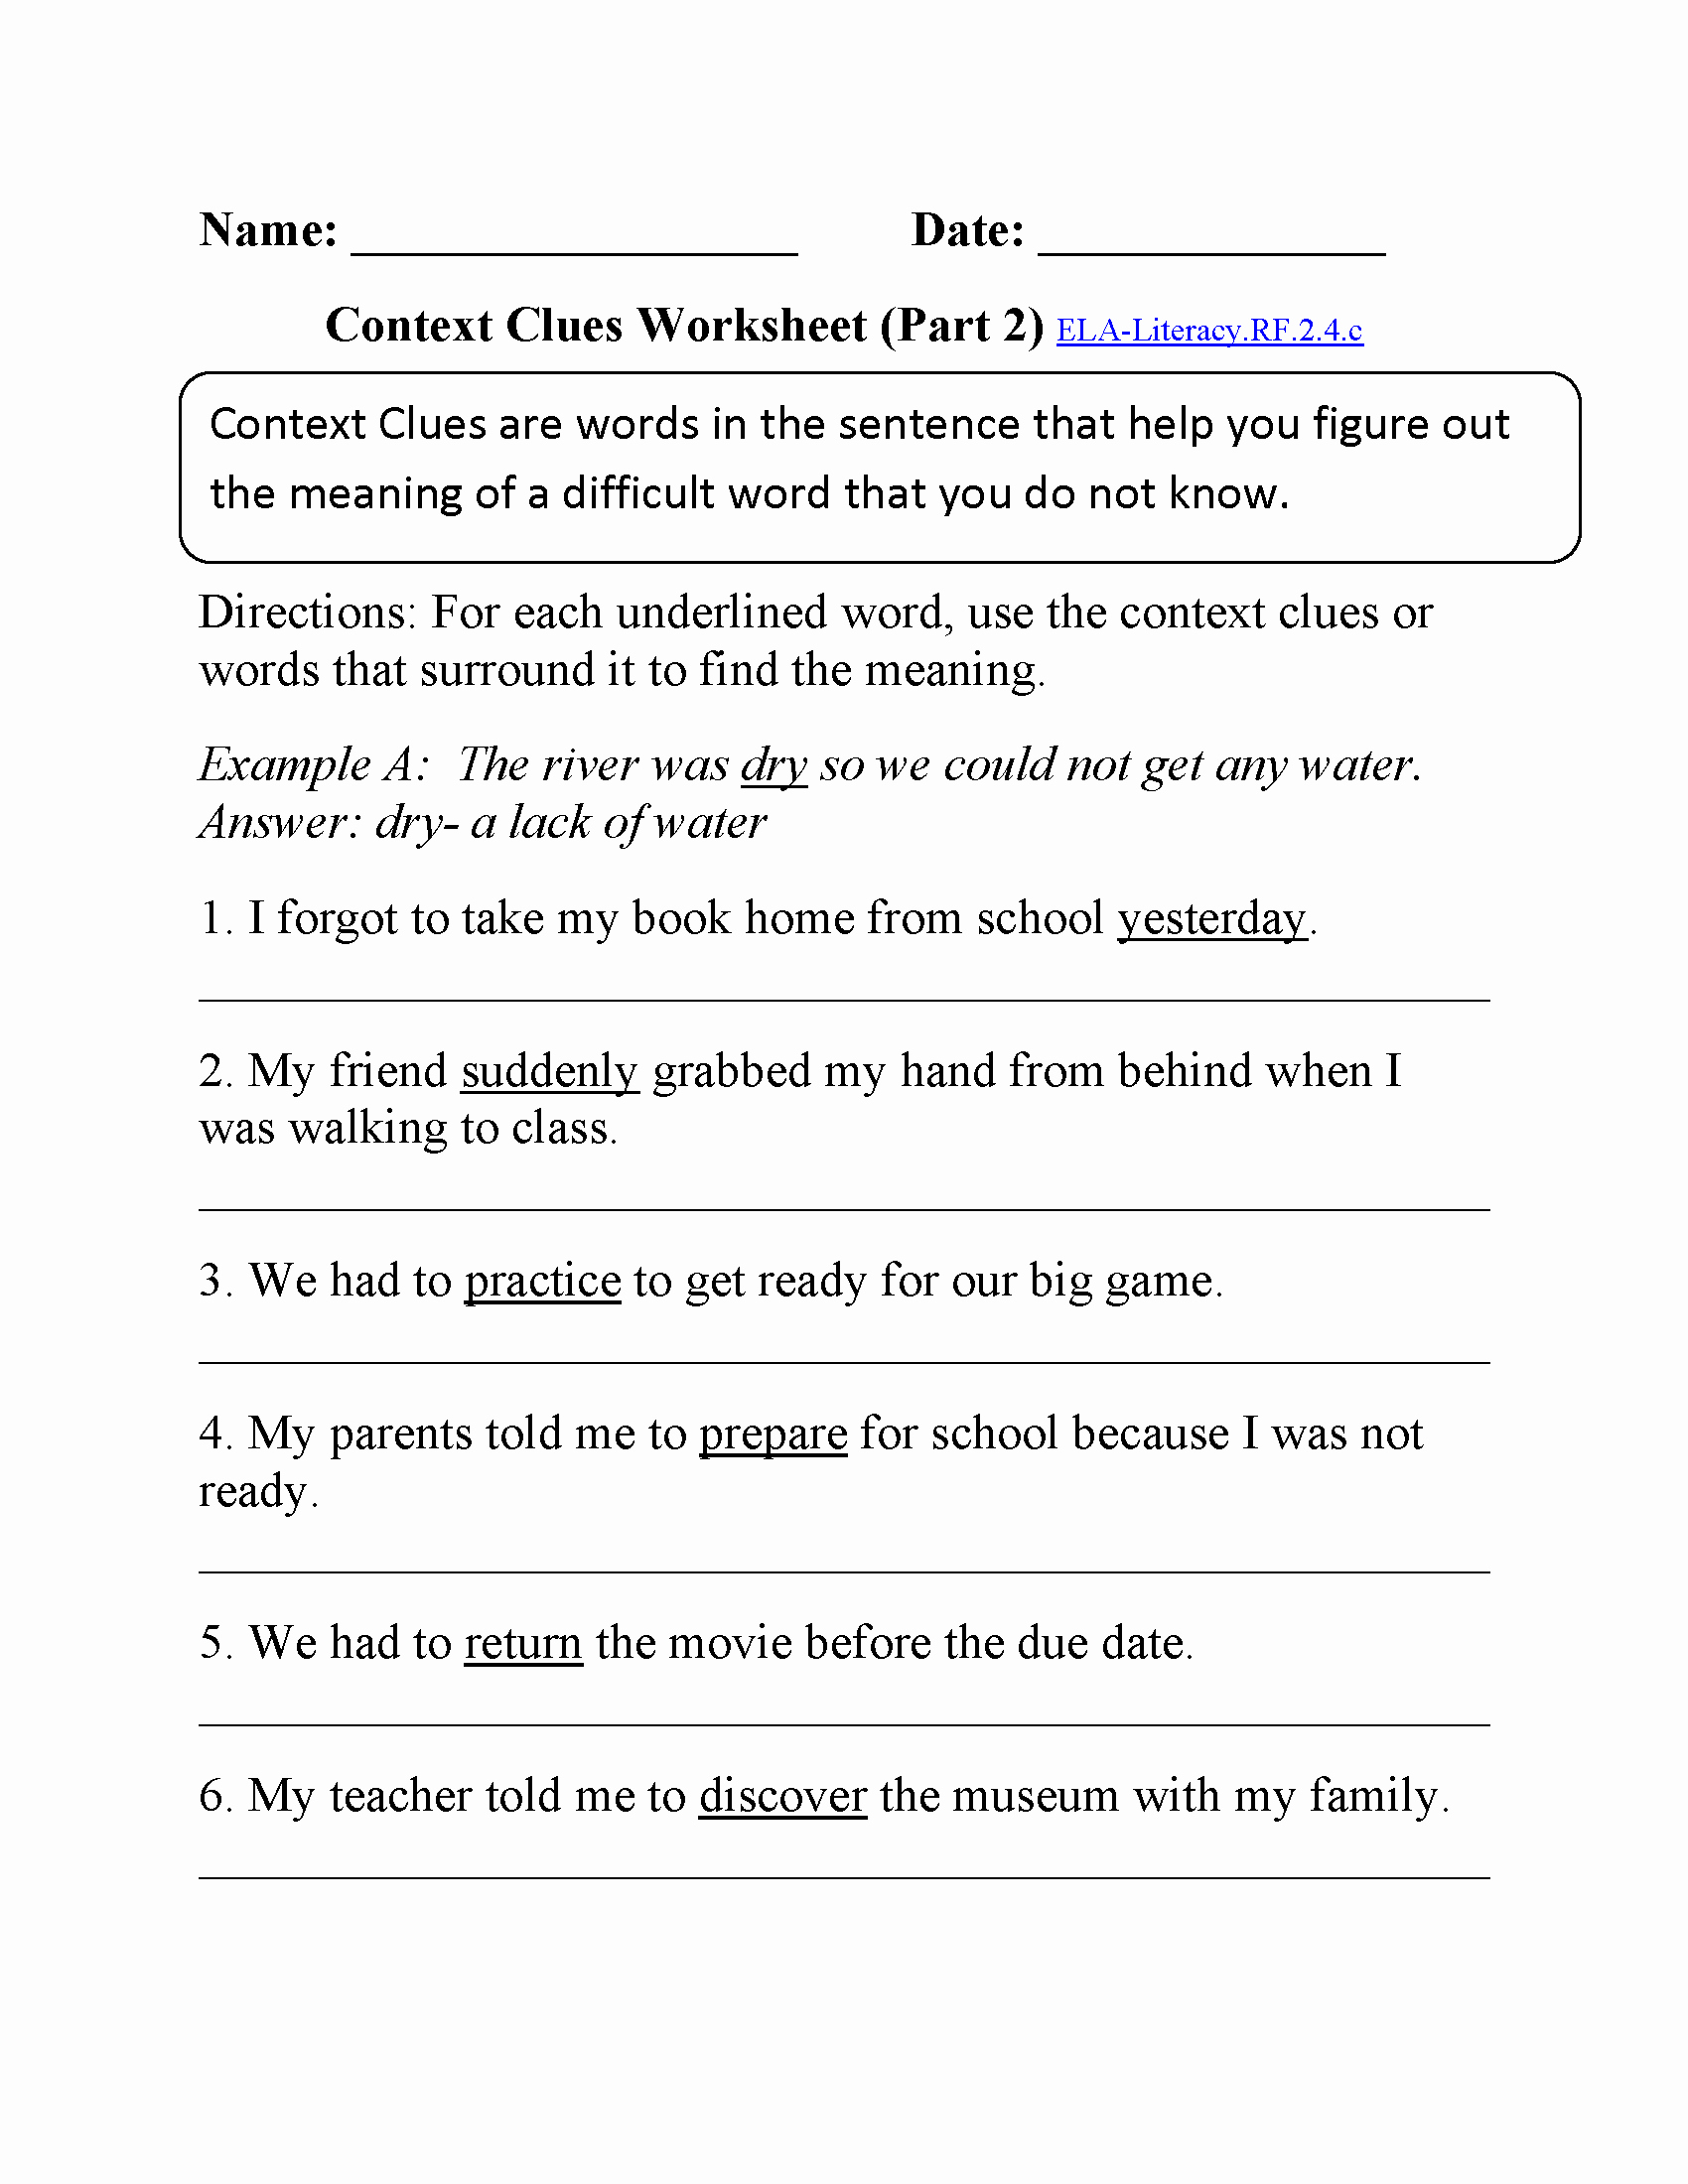 Context Clues Worksheets Second Grade Elegant 2nd Grade Mon Core